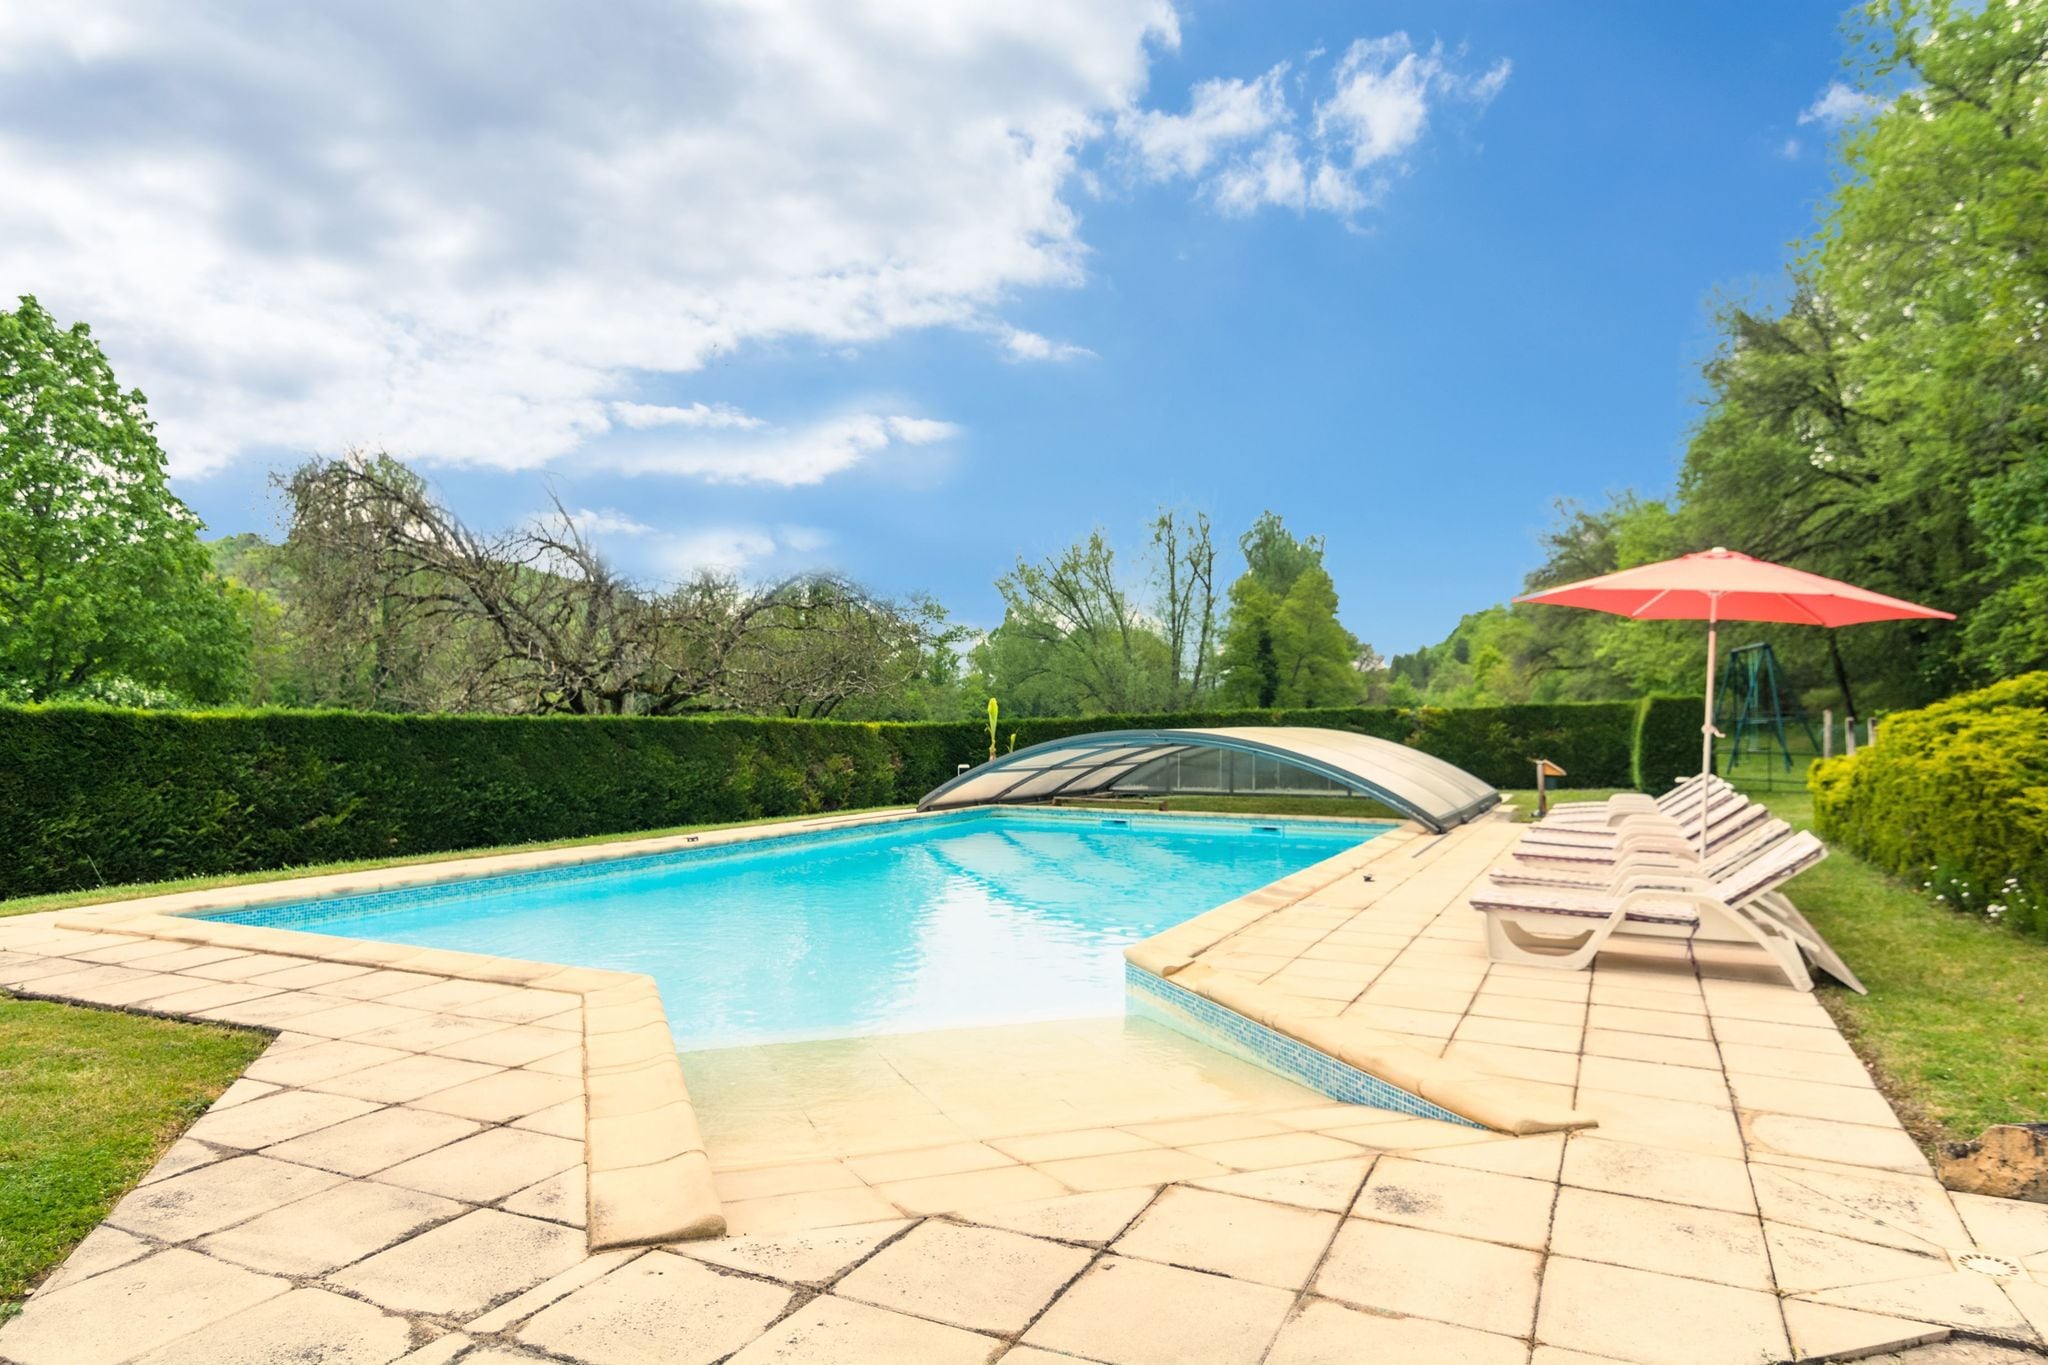 Maison de vacances cosy avec piscine à Siorac-en-Périgord